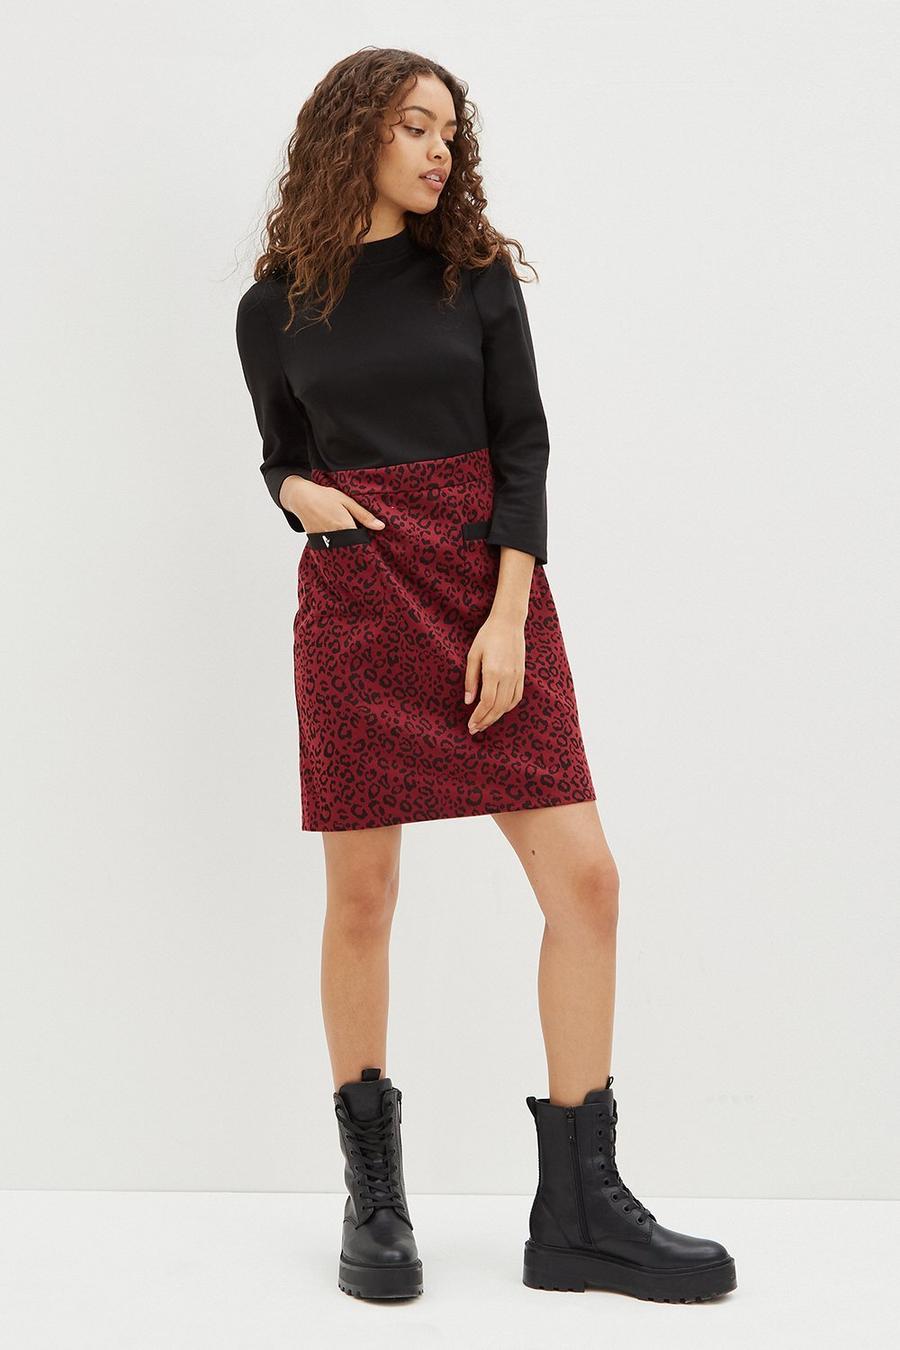 Petite Berry Leopard Skirt Dress